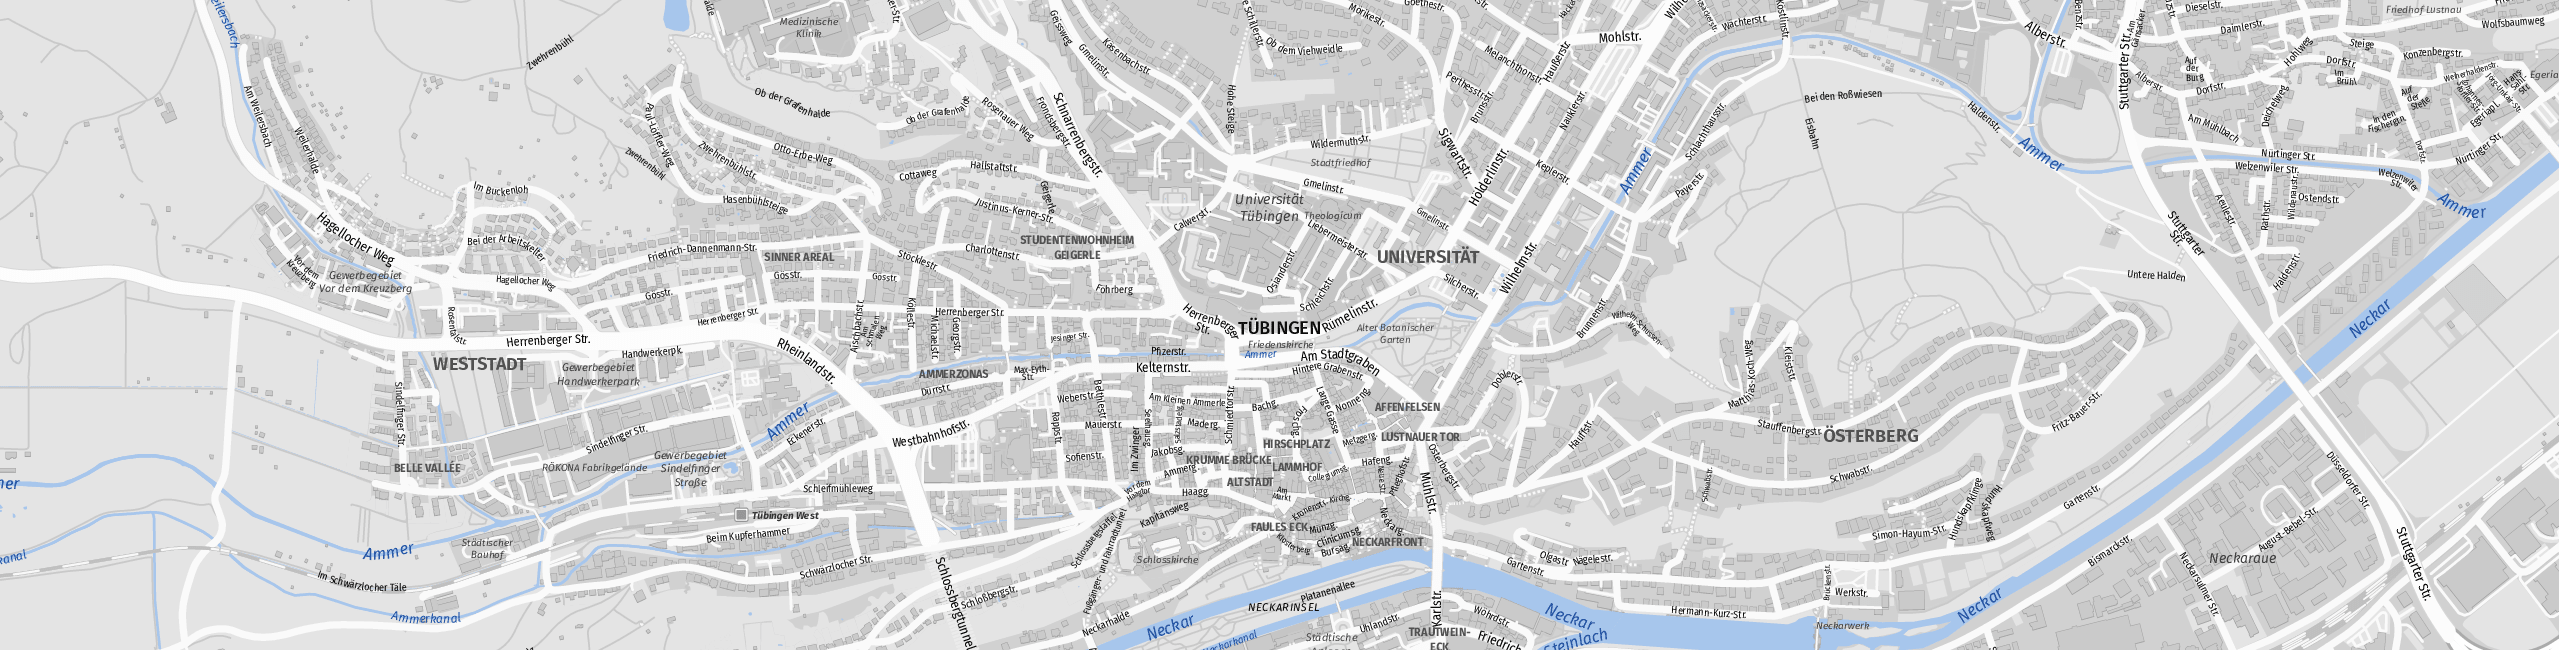 Stadtplan Tübingen zum Downloaden.